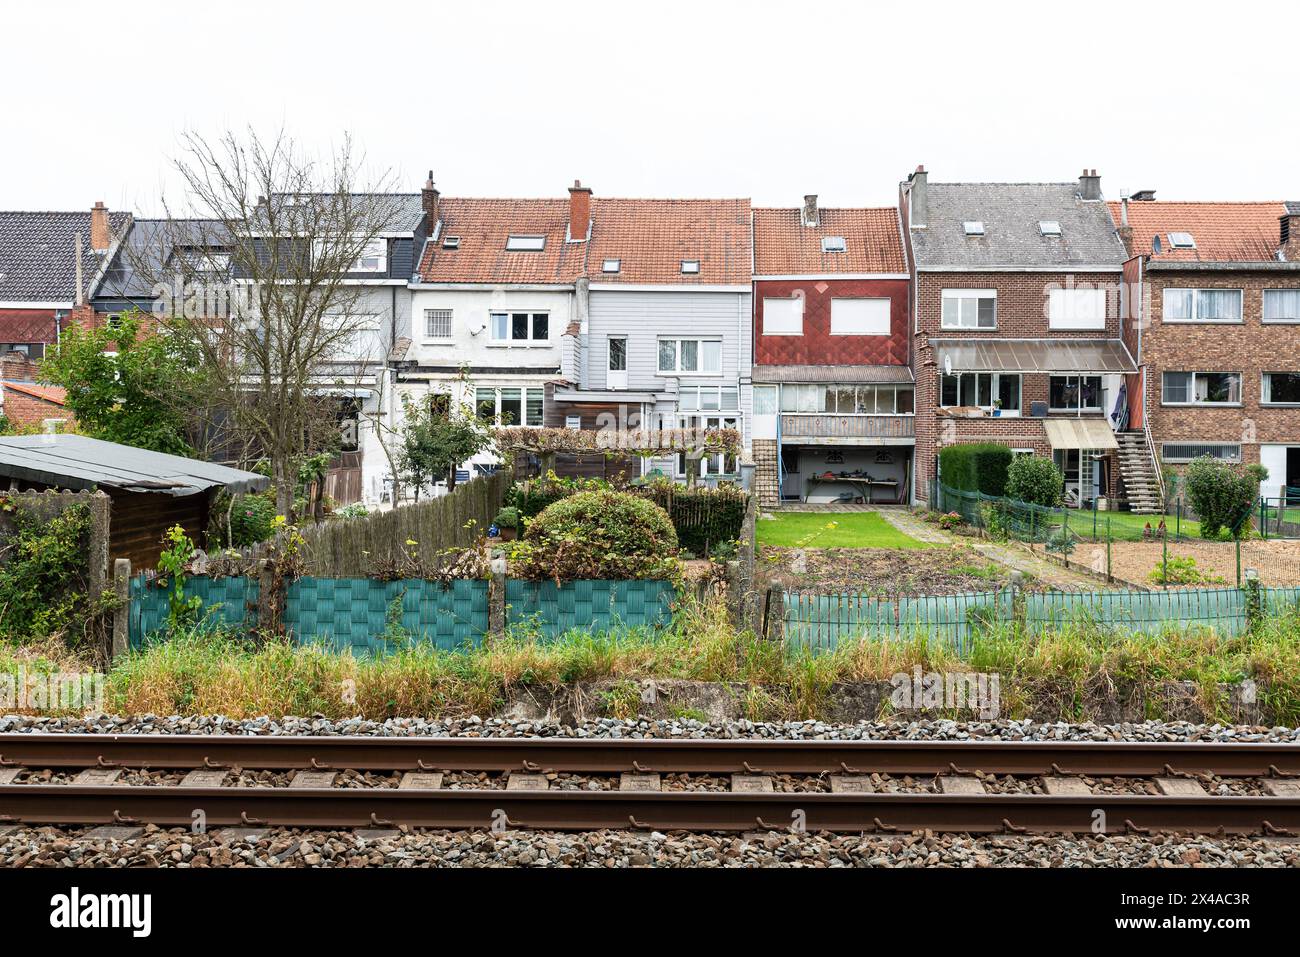 Asse, Brabant flamand, Belgique - 09 24 2021: Voies ferrées et cours de chemin de fer traditionnels Banque D'Images